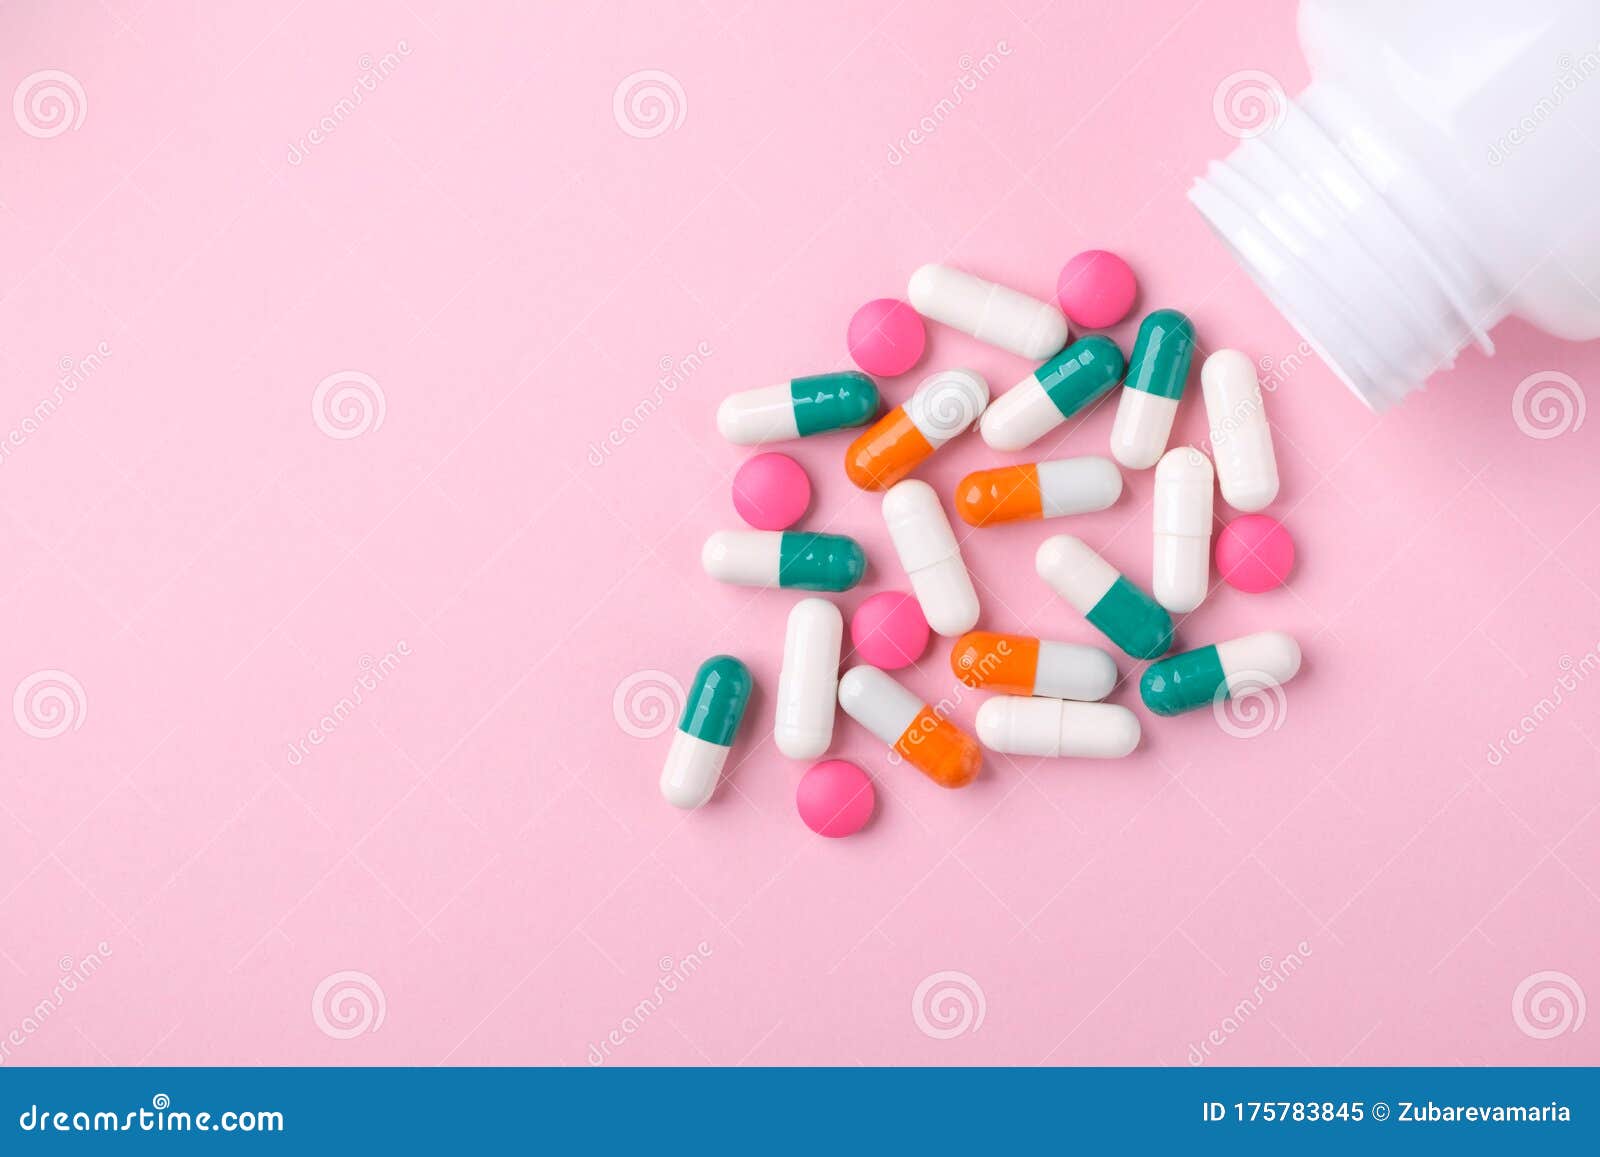 粉红色的药盒和水杯的顶视图 库存图片. 图片 包括有 玻璃, 塑料, 计划, 医学, 药盒, 药片, 剂量 - 211080051